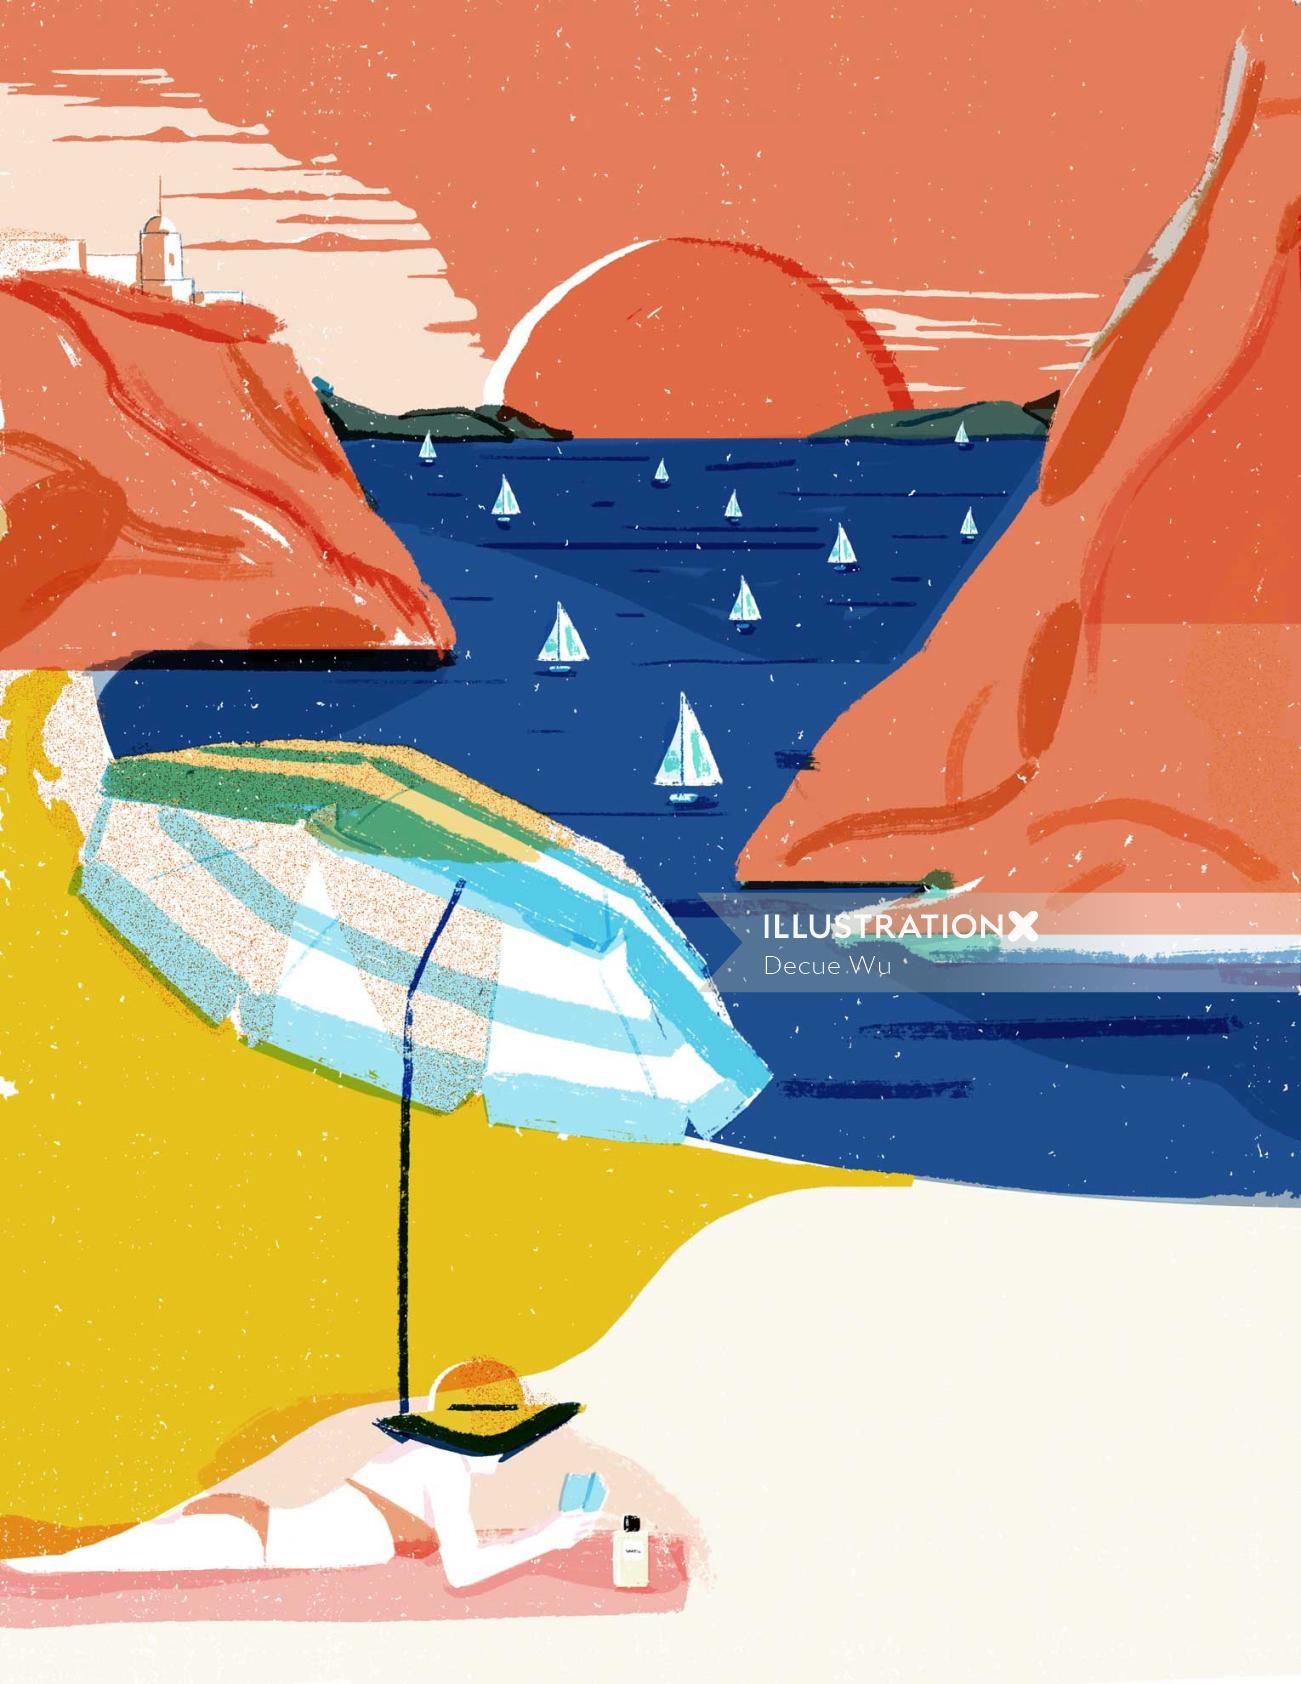 A ilustração editorial de férias na praia para a Elle decoration China